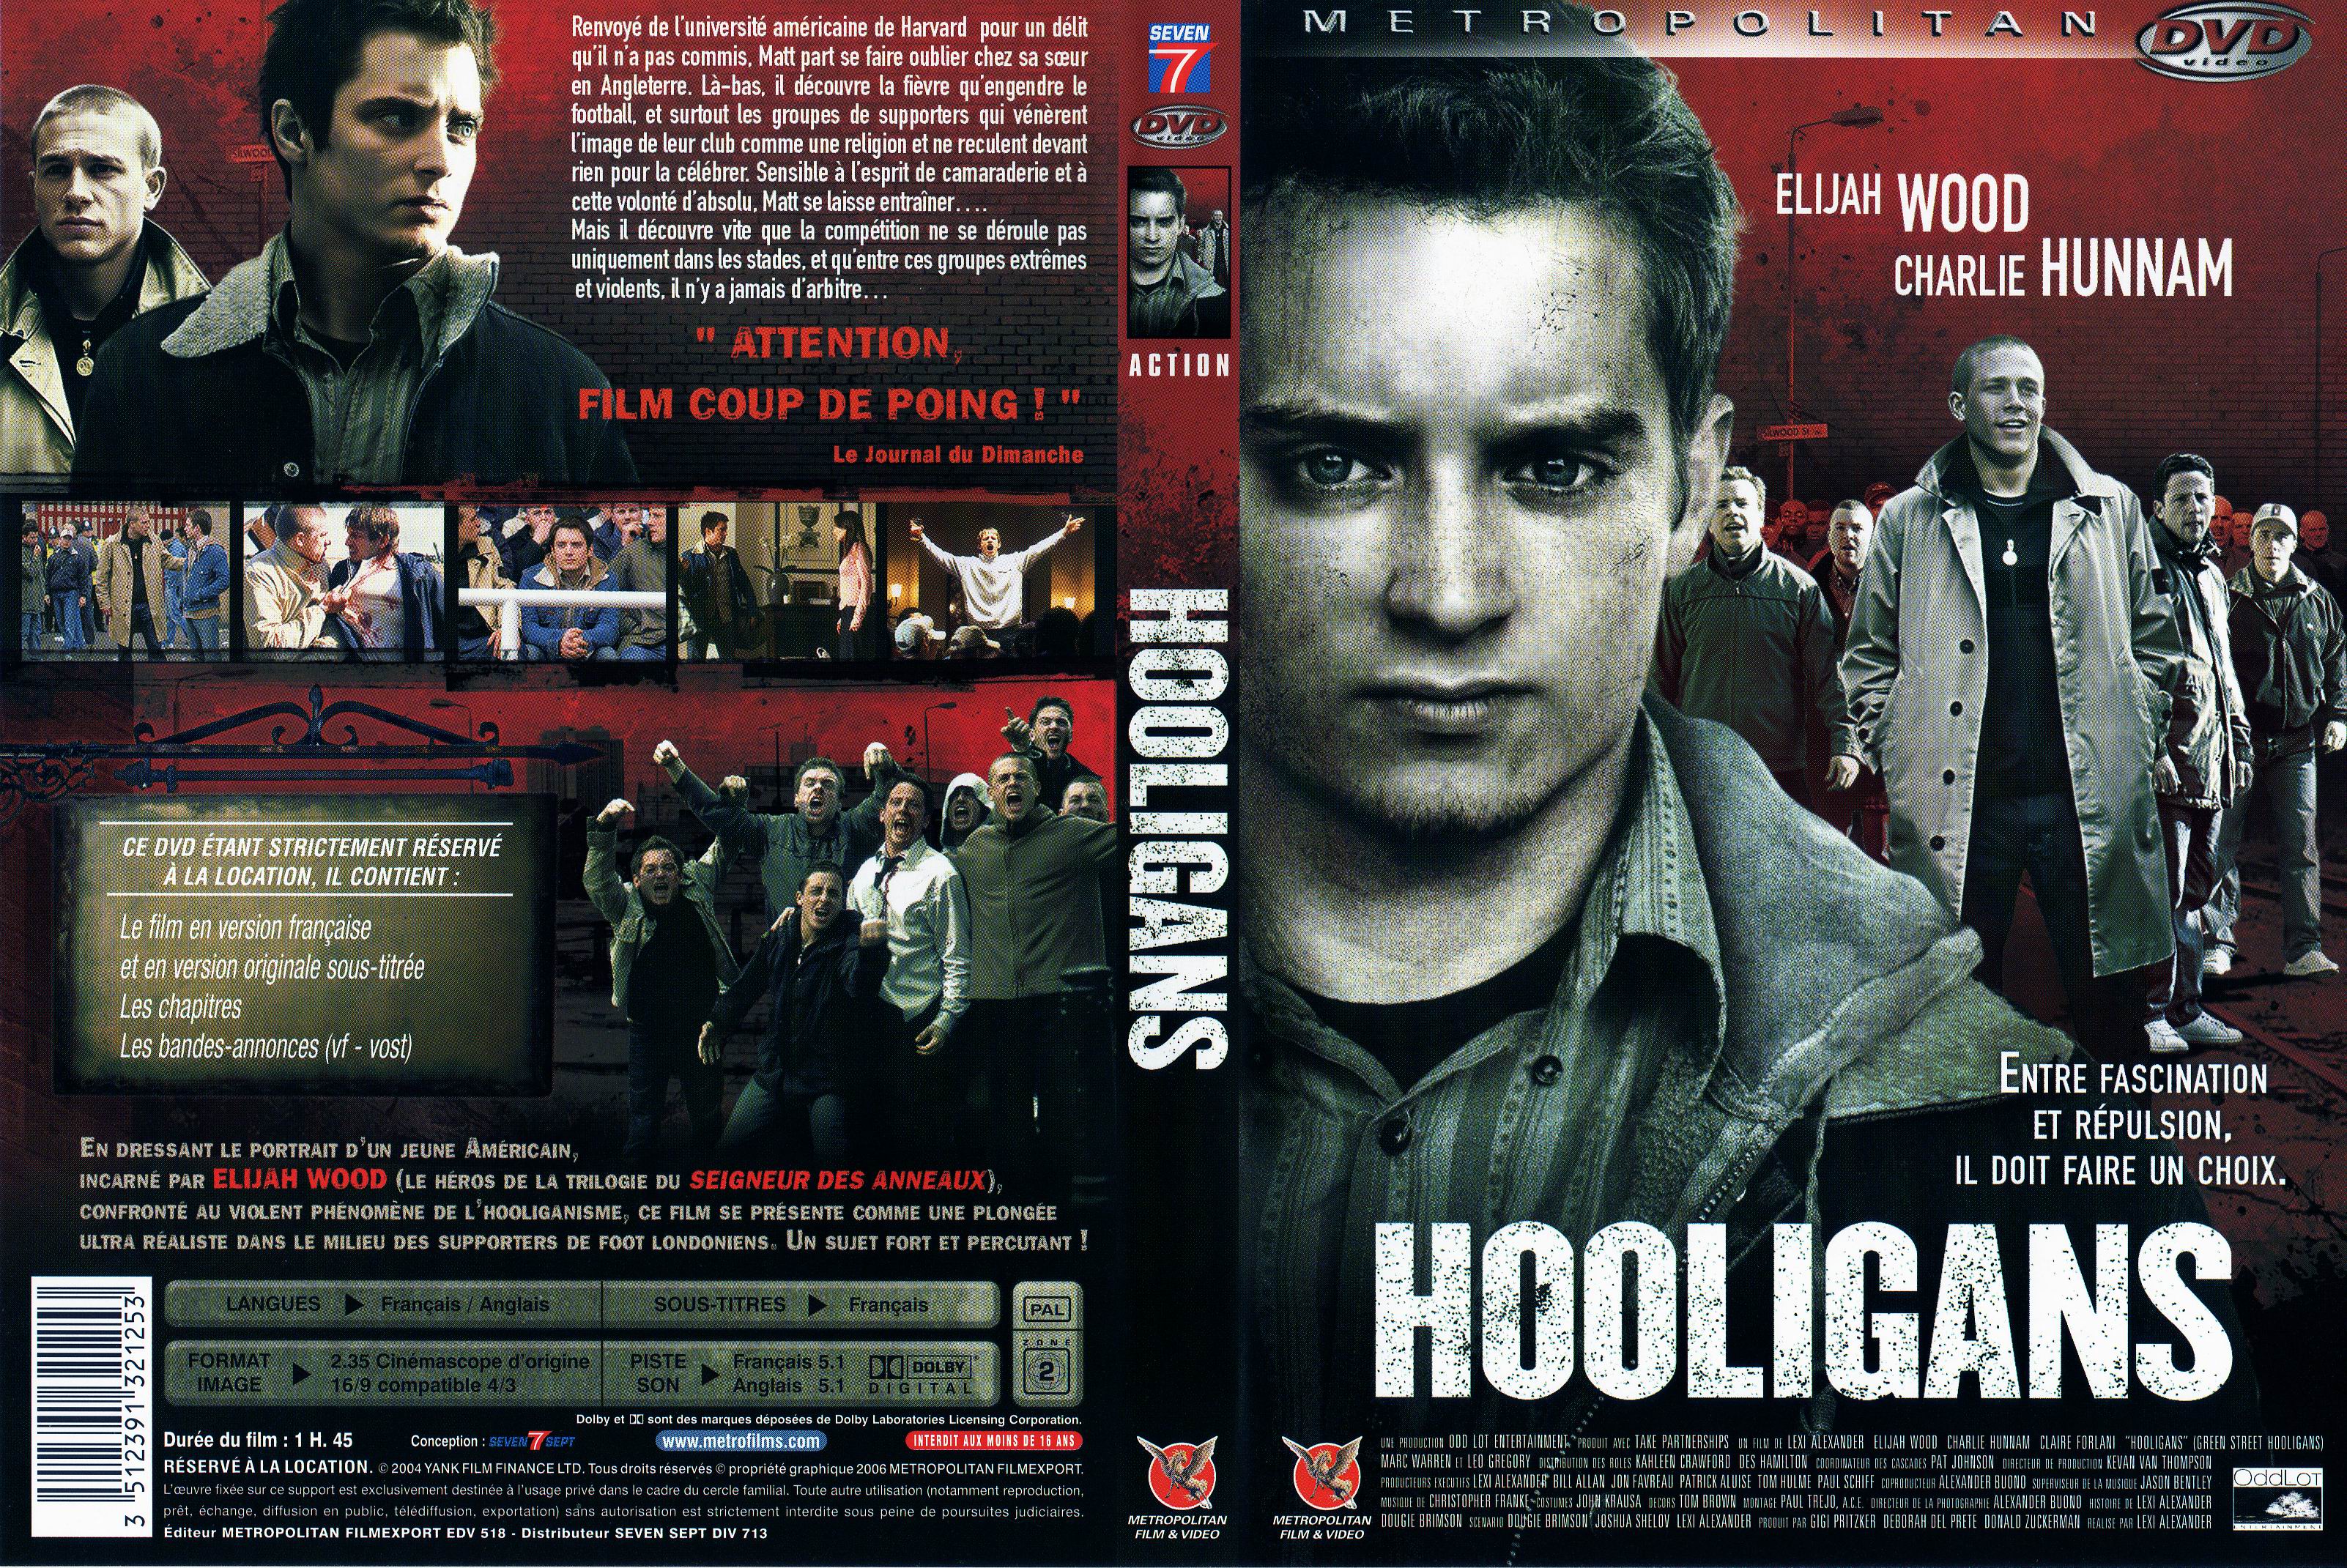 Jaquette DVD Hooligans (Elijah Wood) v2